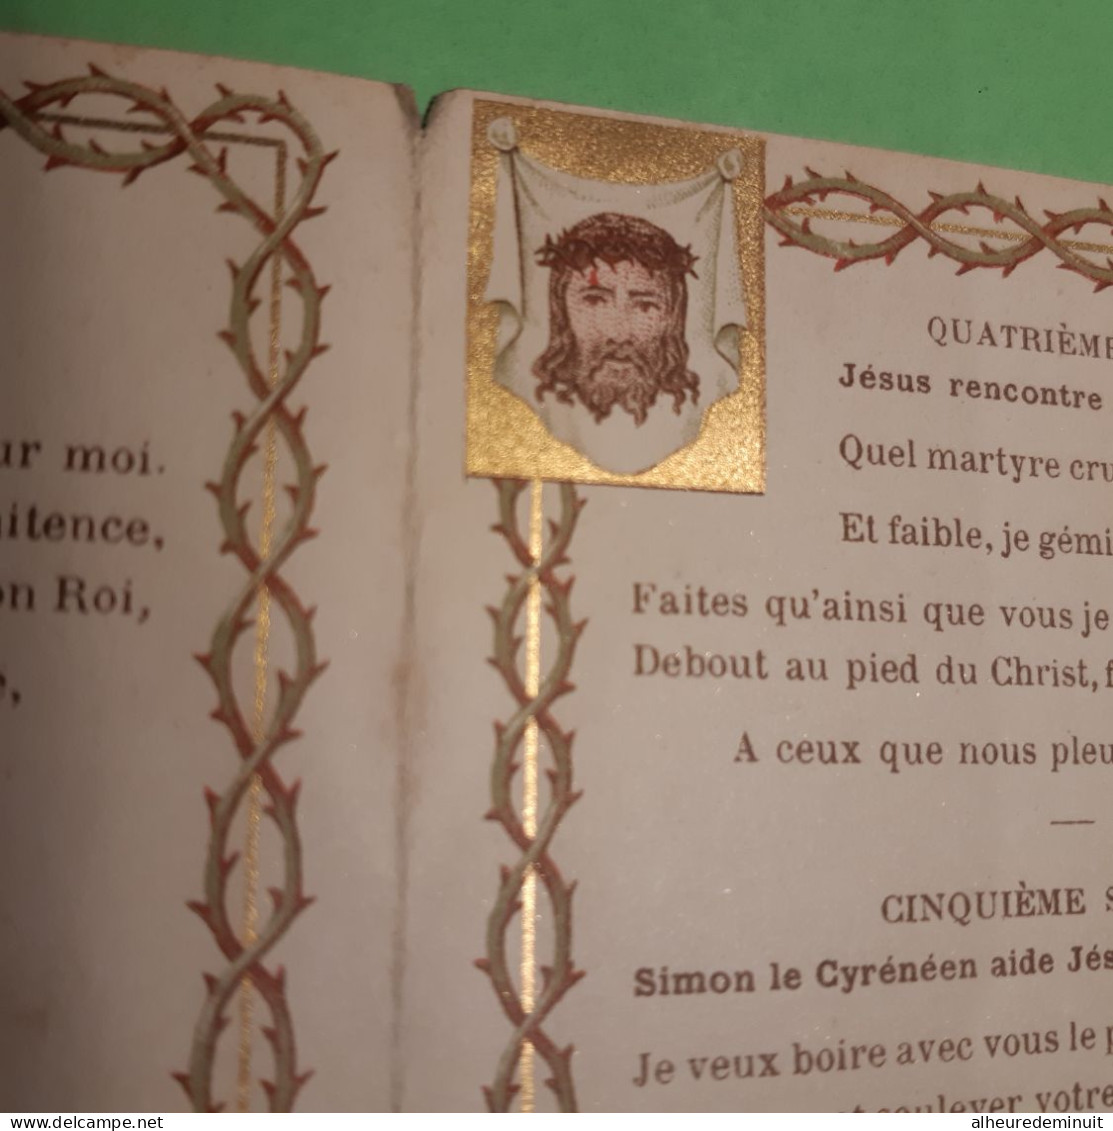 Image pieuse ancienne"CHEMIN DE CROIX"COEURS EN DEUIL"JESUS"VIERGE MARIE"PRIERE PREPARATOIRE"symbole coq échelle éponge